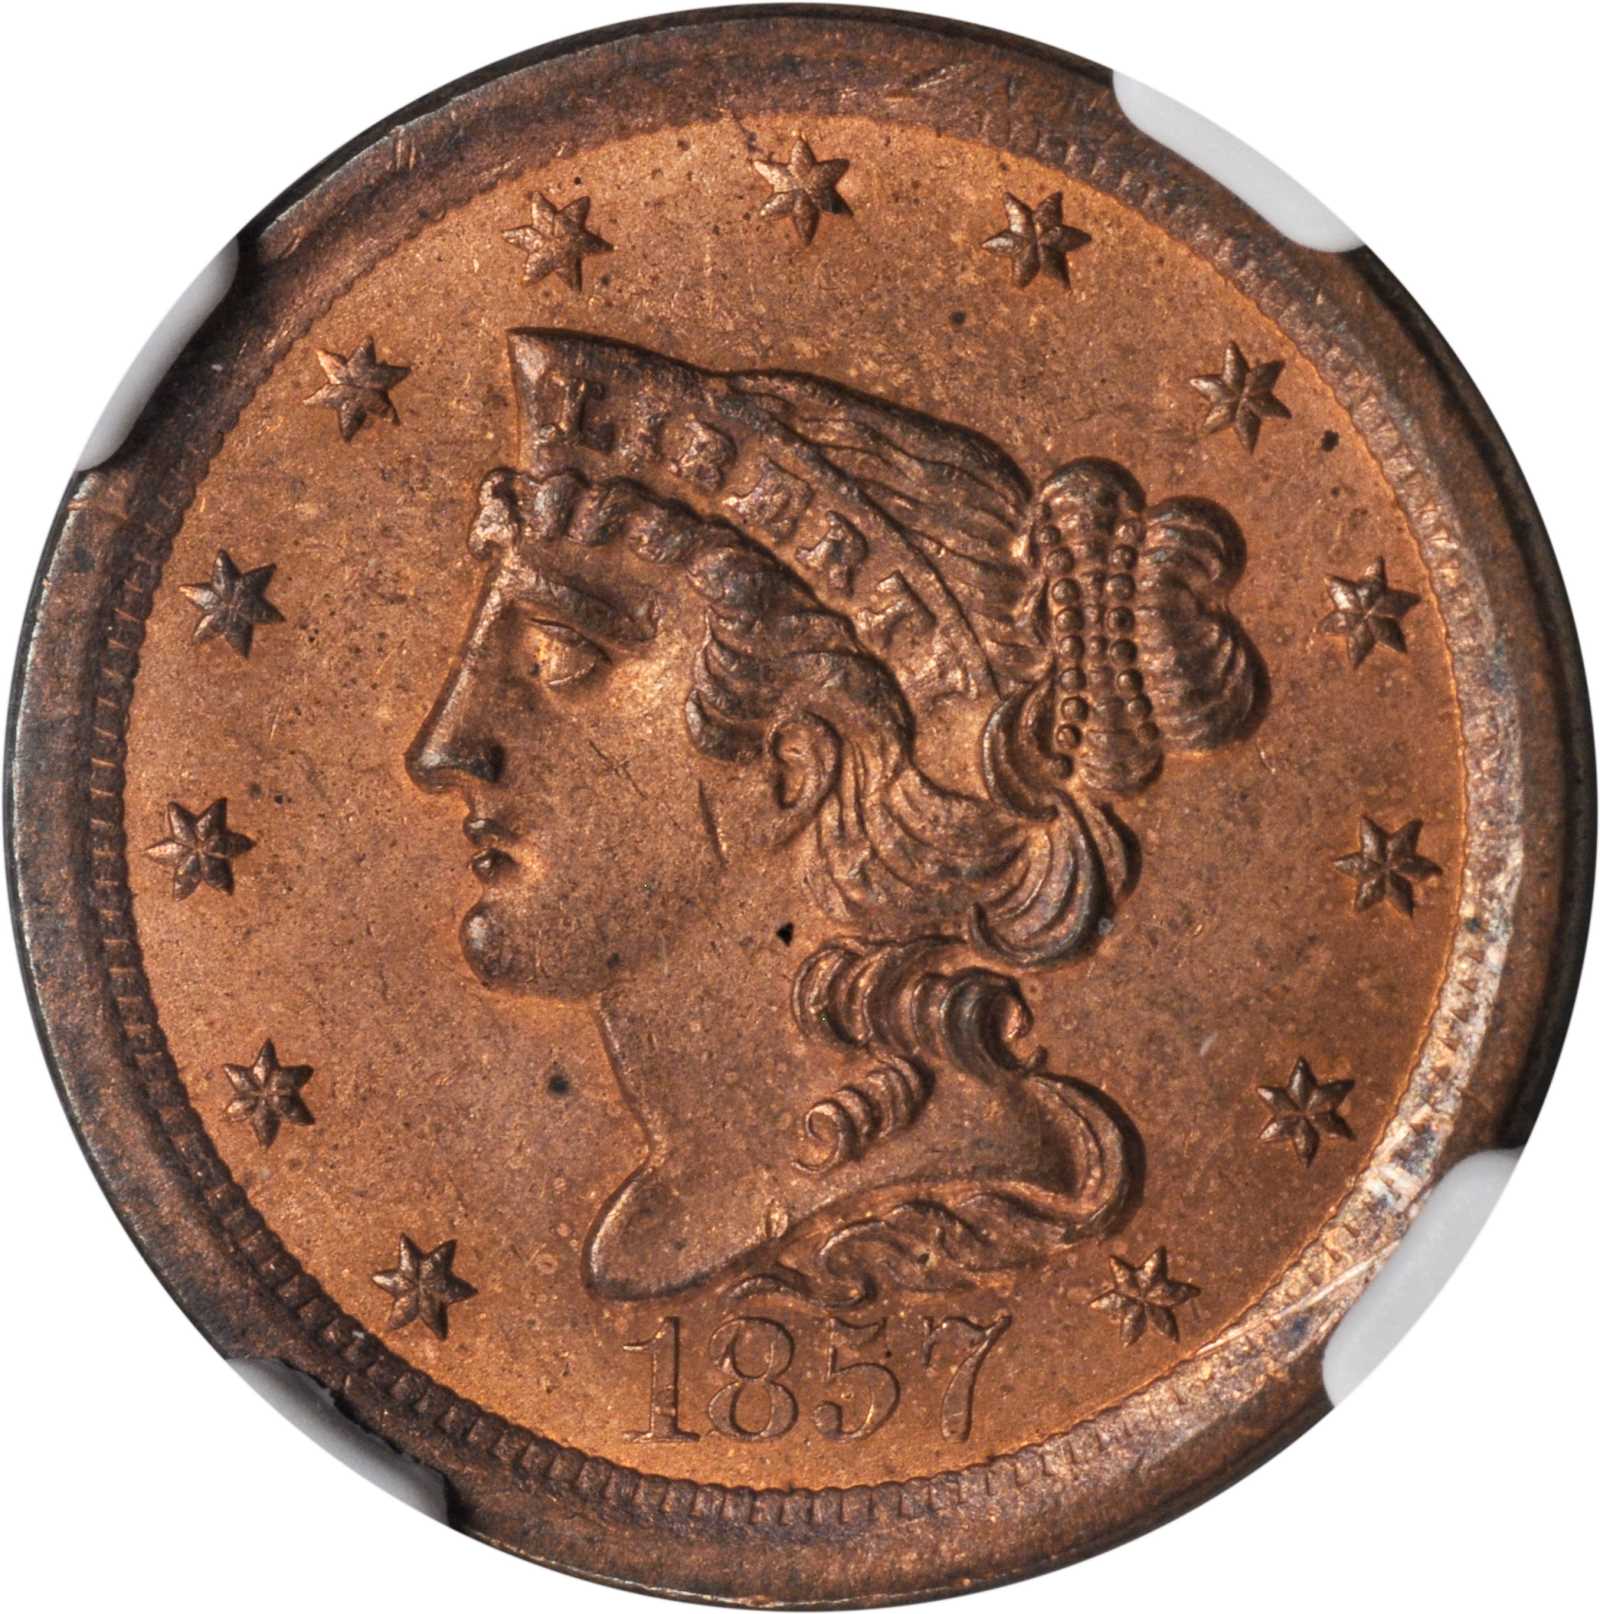 1857 Braided Hair Half Cent. C-1. Rarity-2. MS-66 RB (NGC).